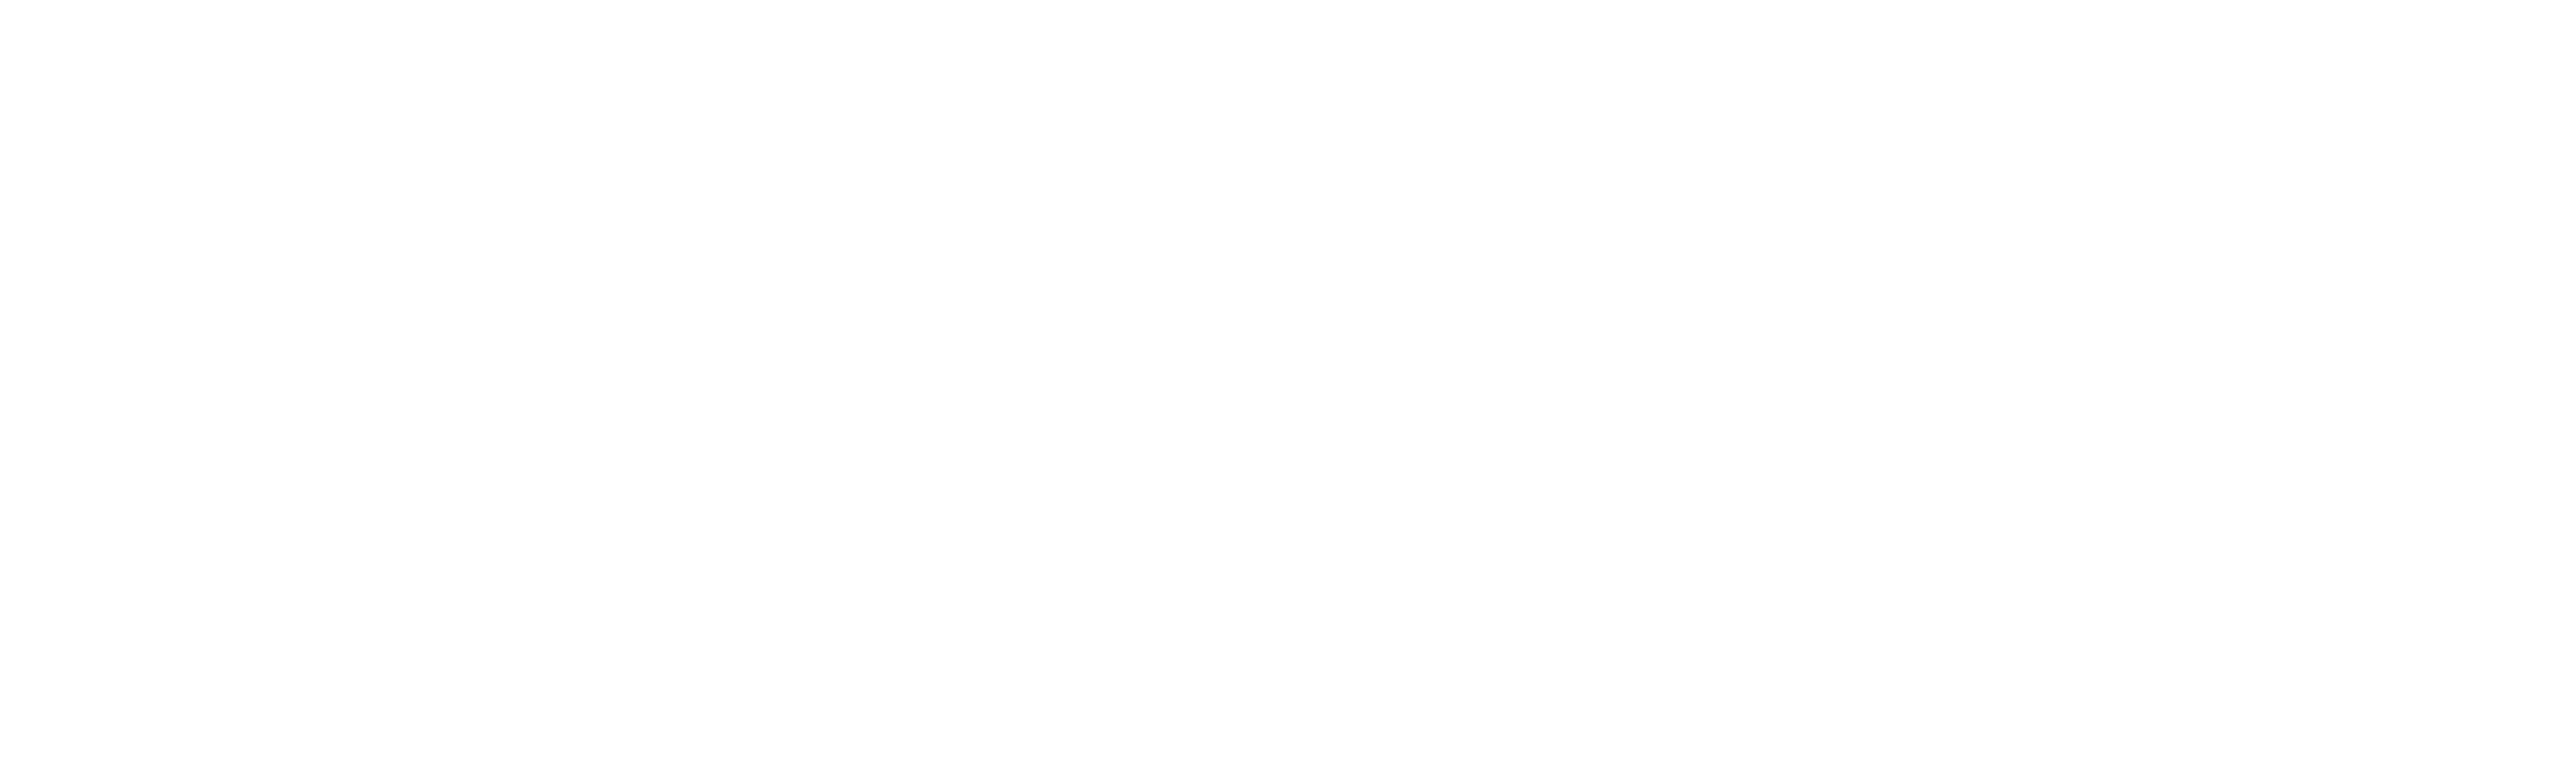 Boomtownroi Logo - BoomTown! Unite 1- 2019